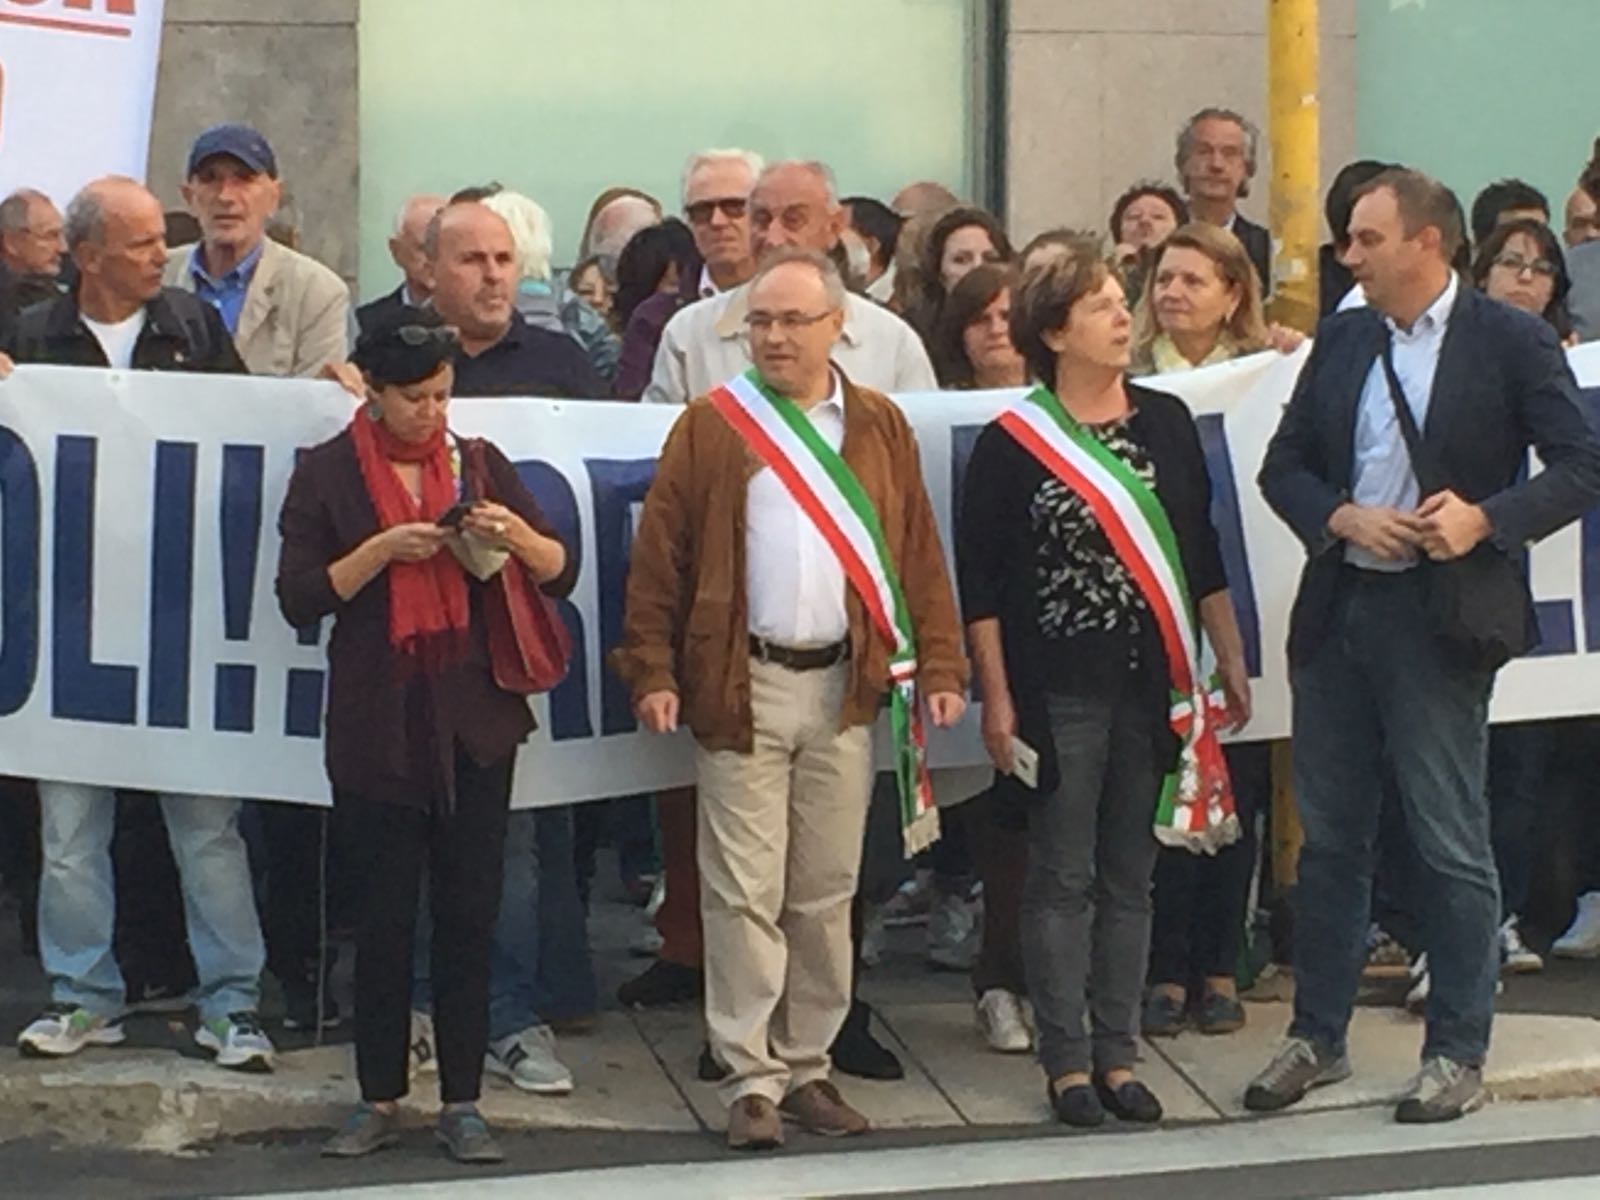 Protesta a Palazzo Isimbardi contro la discarica Solter